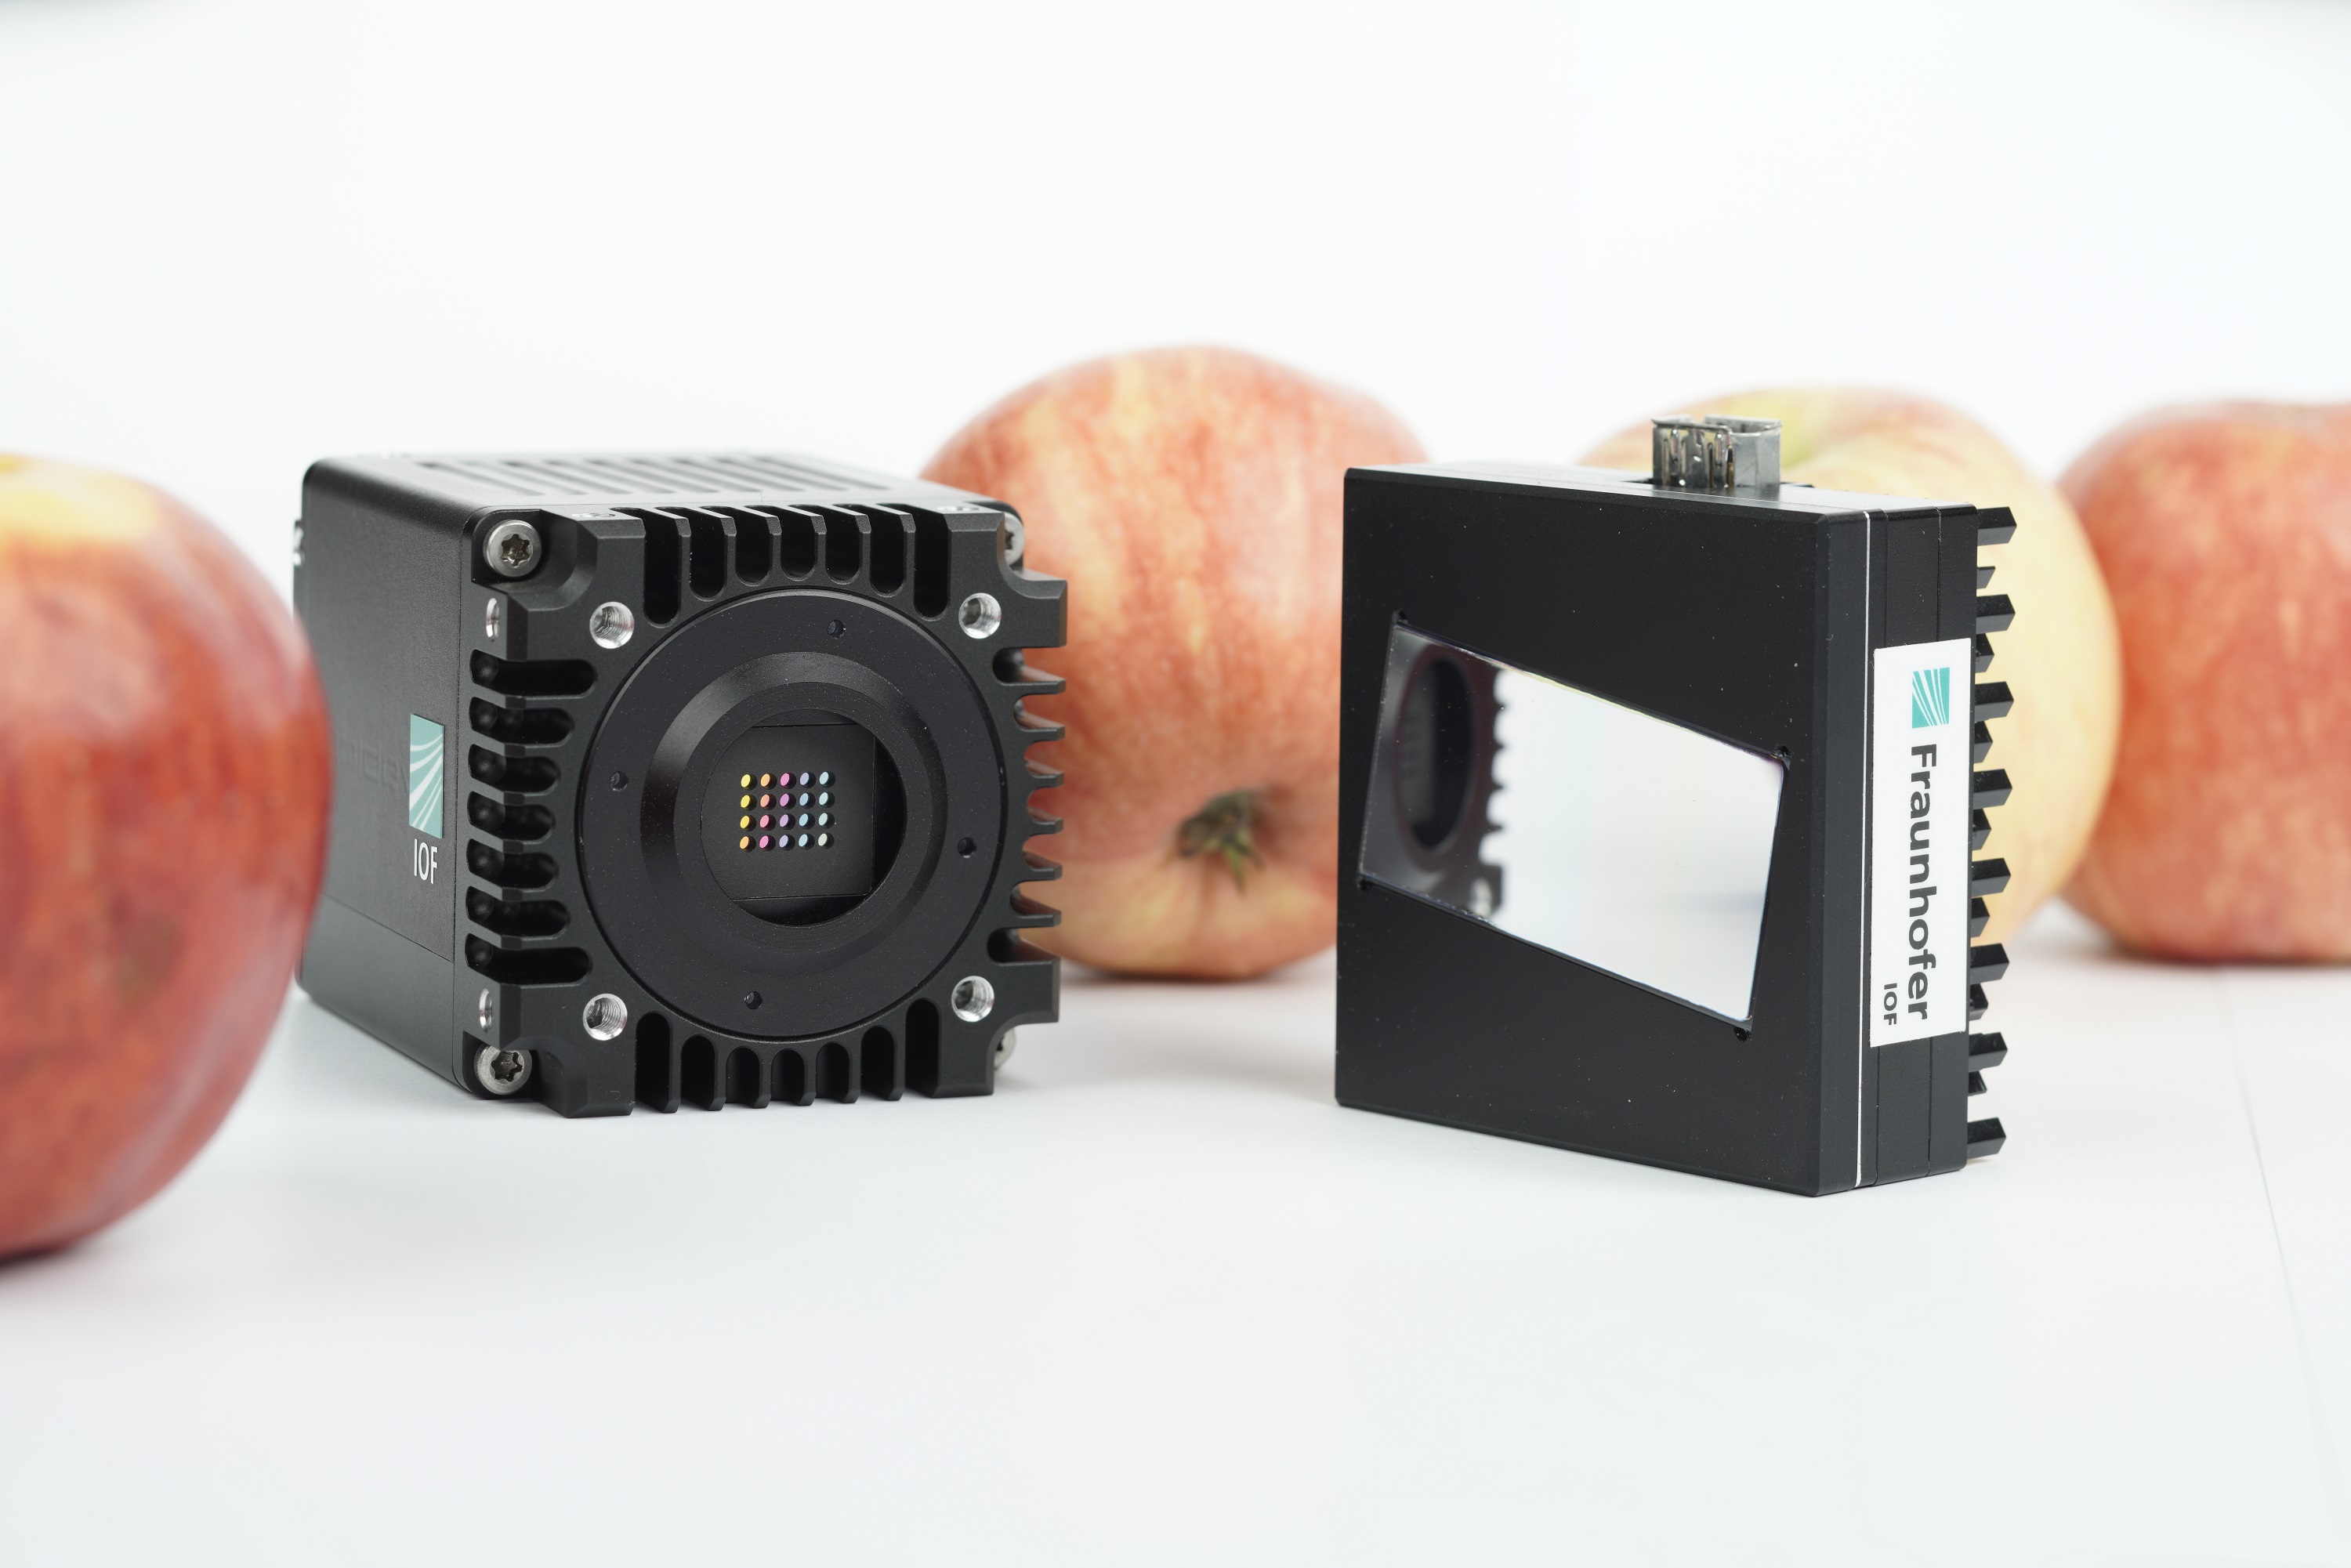 Zwei Demonstratoren kompakter multispektraler Kameras mit linearem Verlaufsfilter für unterschiedliche Spektralbereiche (links: kurzwelliges Infrarot, rechts: visueller Bereich und nahes Infrarot)